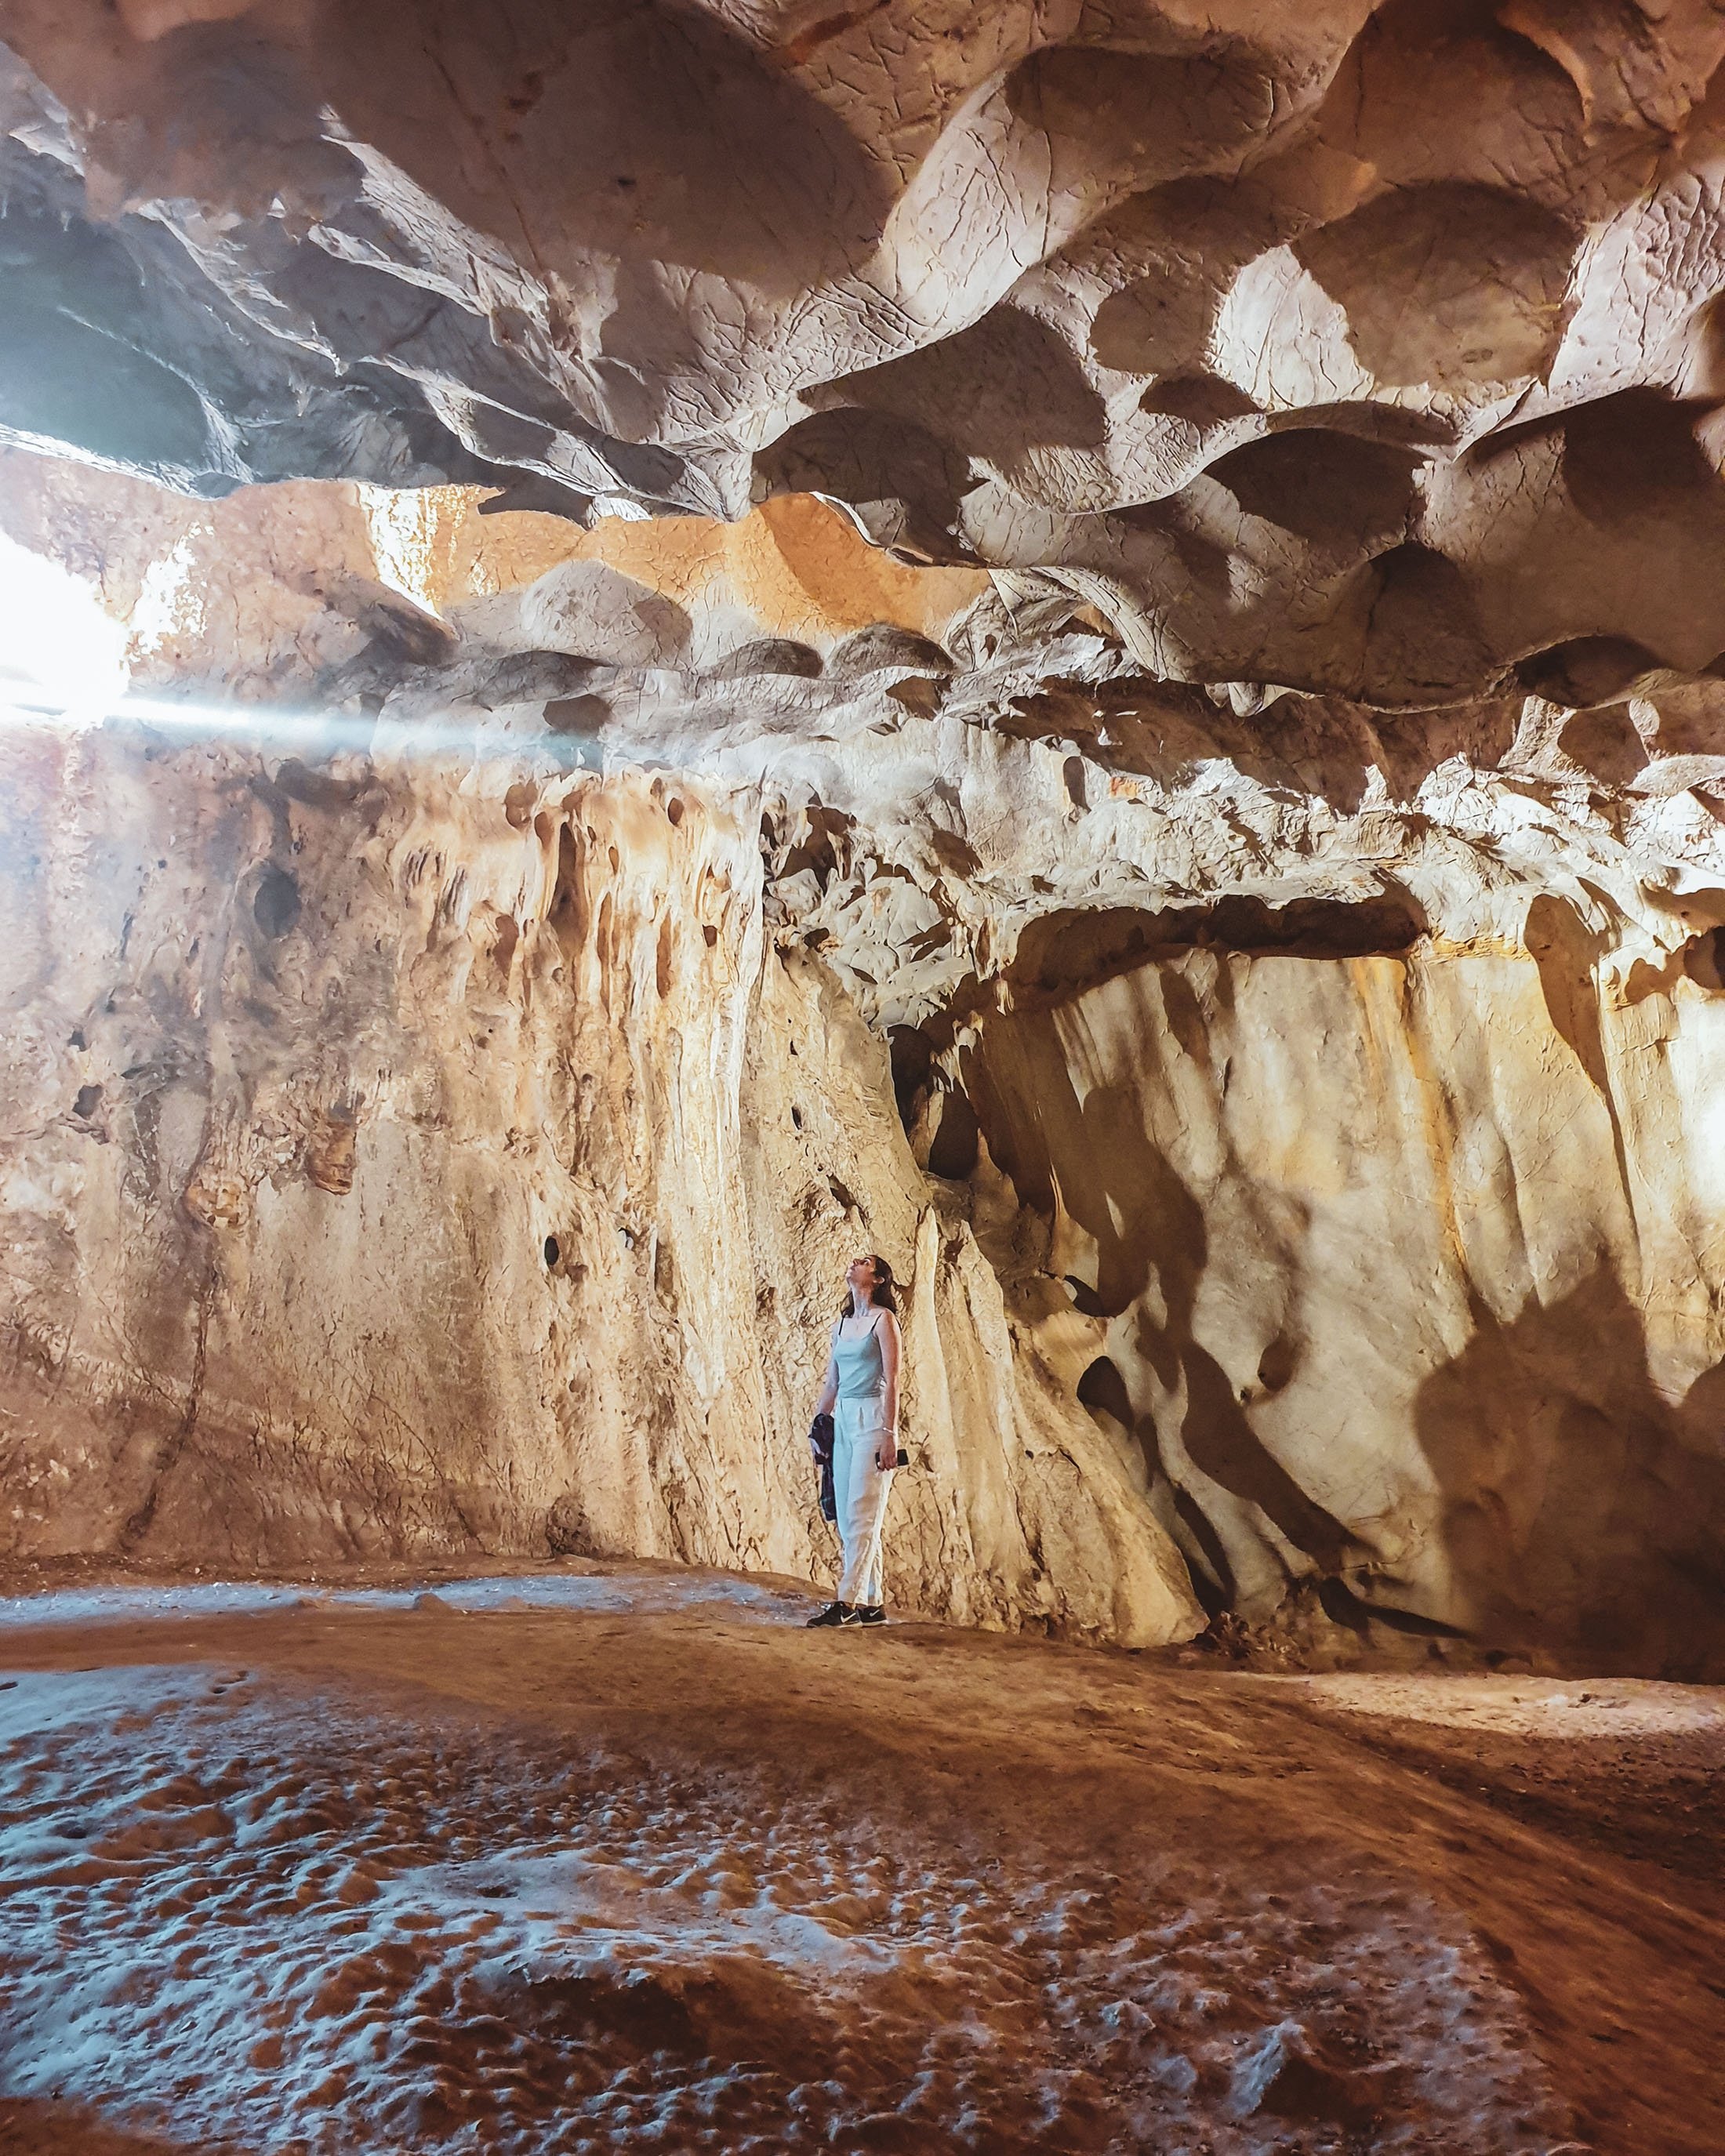 Karain Cave, Antalya, Turkey. (Photo by Argun Konuk)